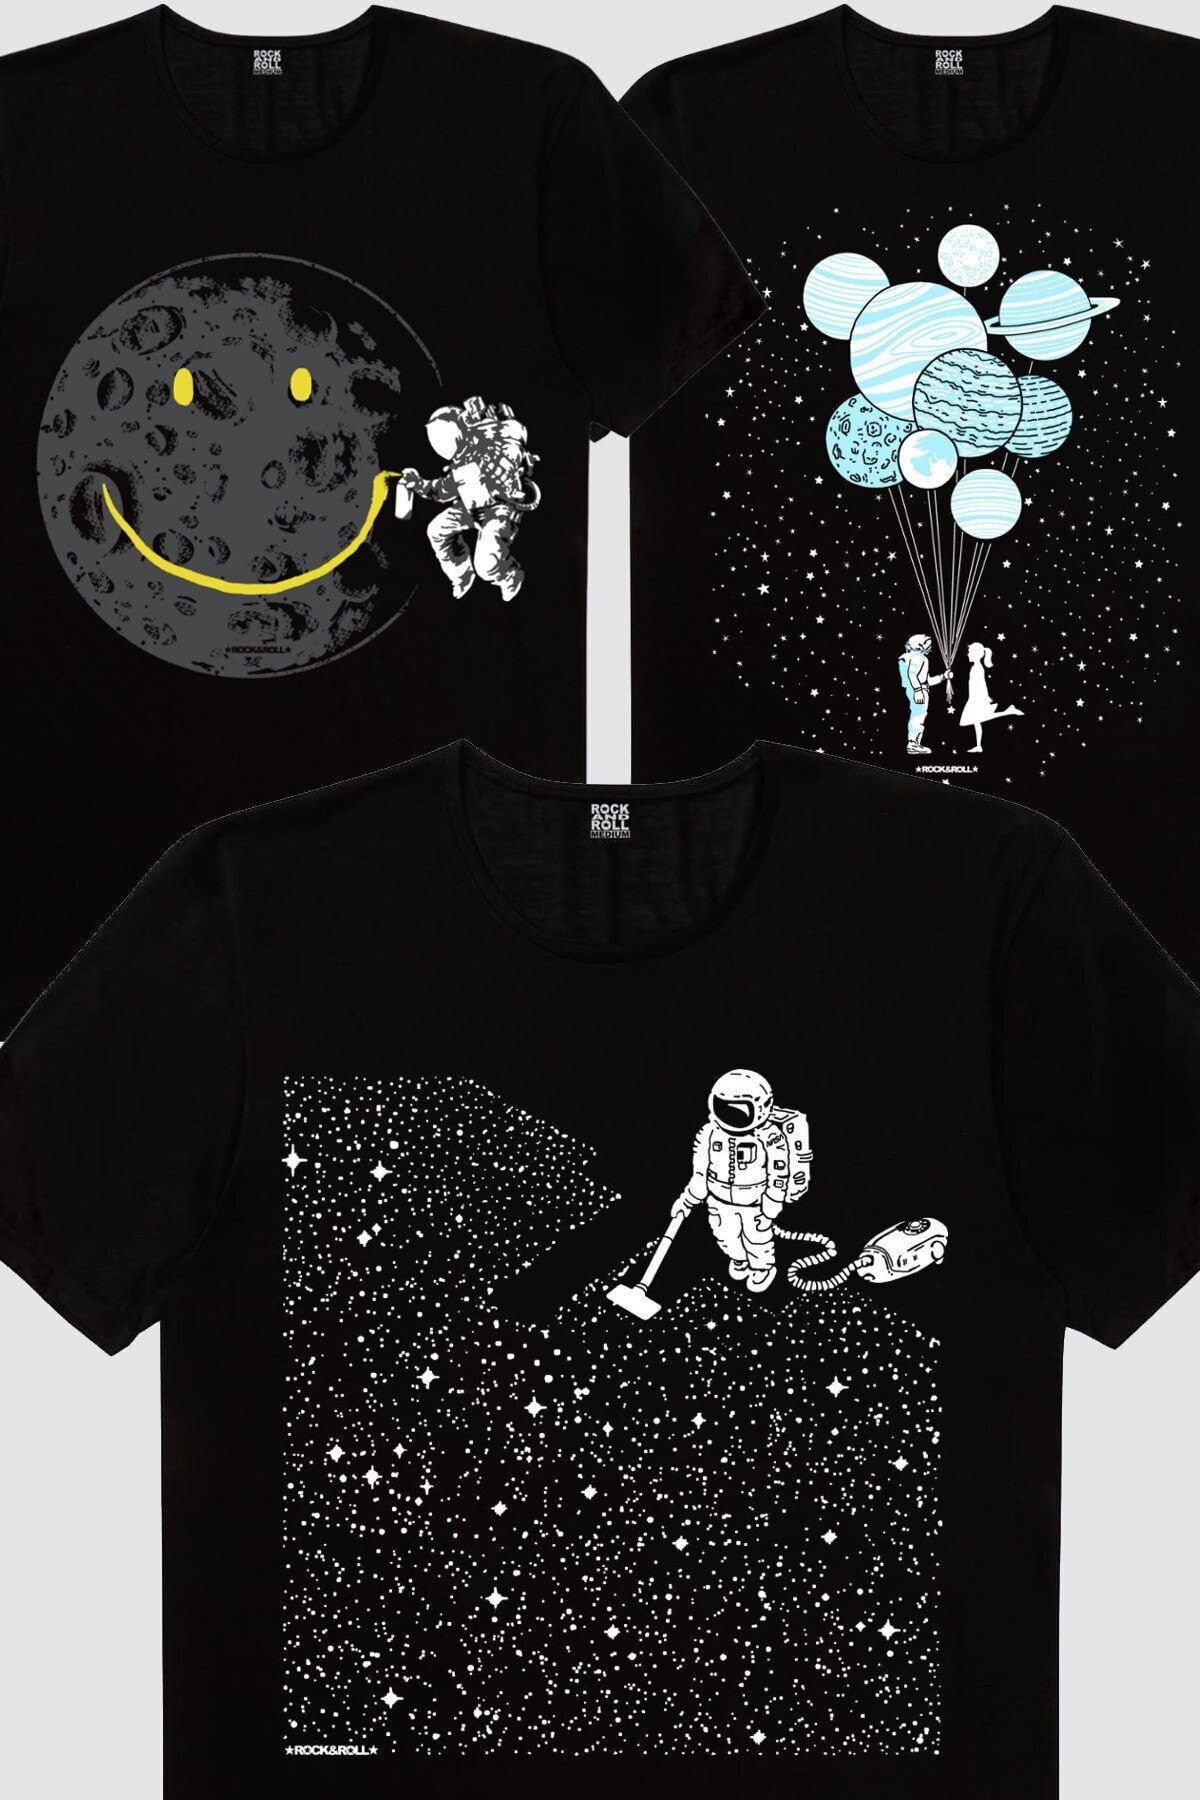 Balon Gezegeneler, Süpürgeli Astronot, Grafitici Astronot Kadın 3'lü Eko Paket T-shirt